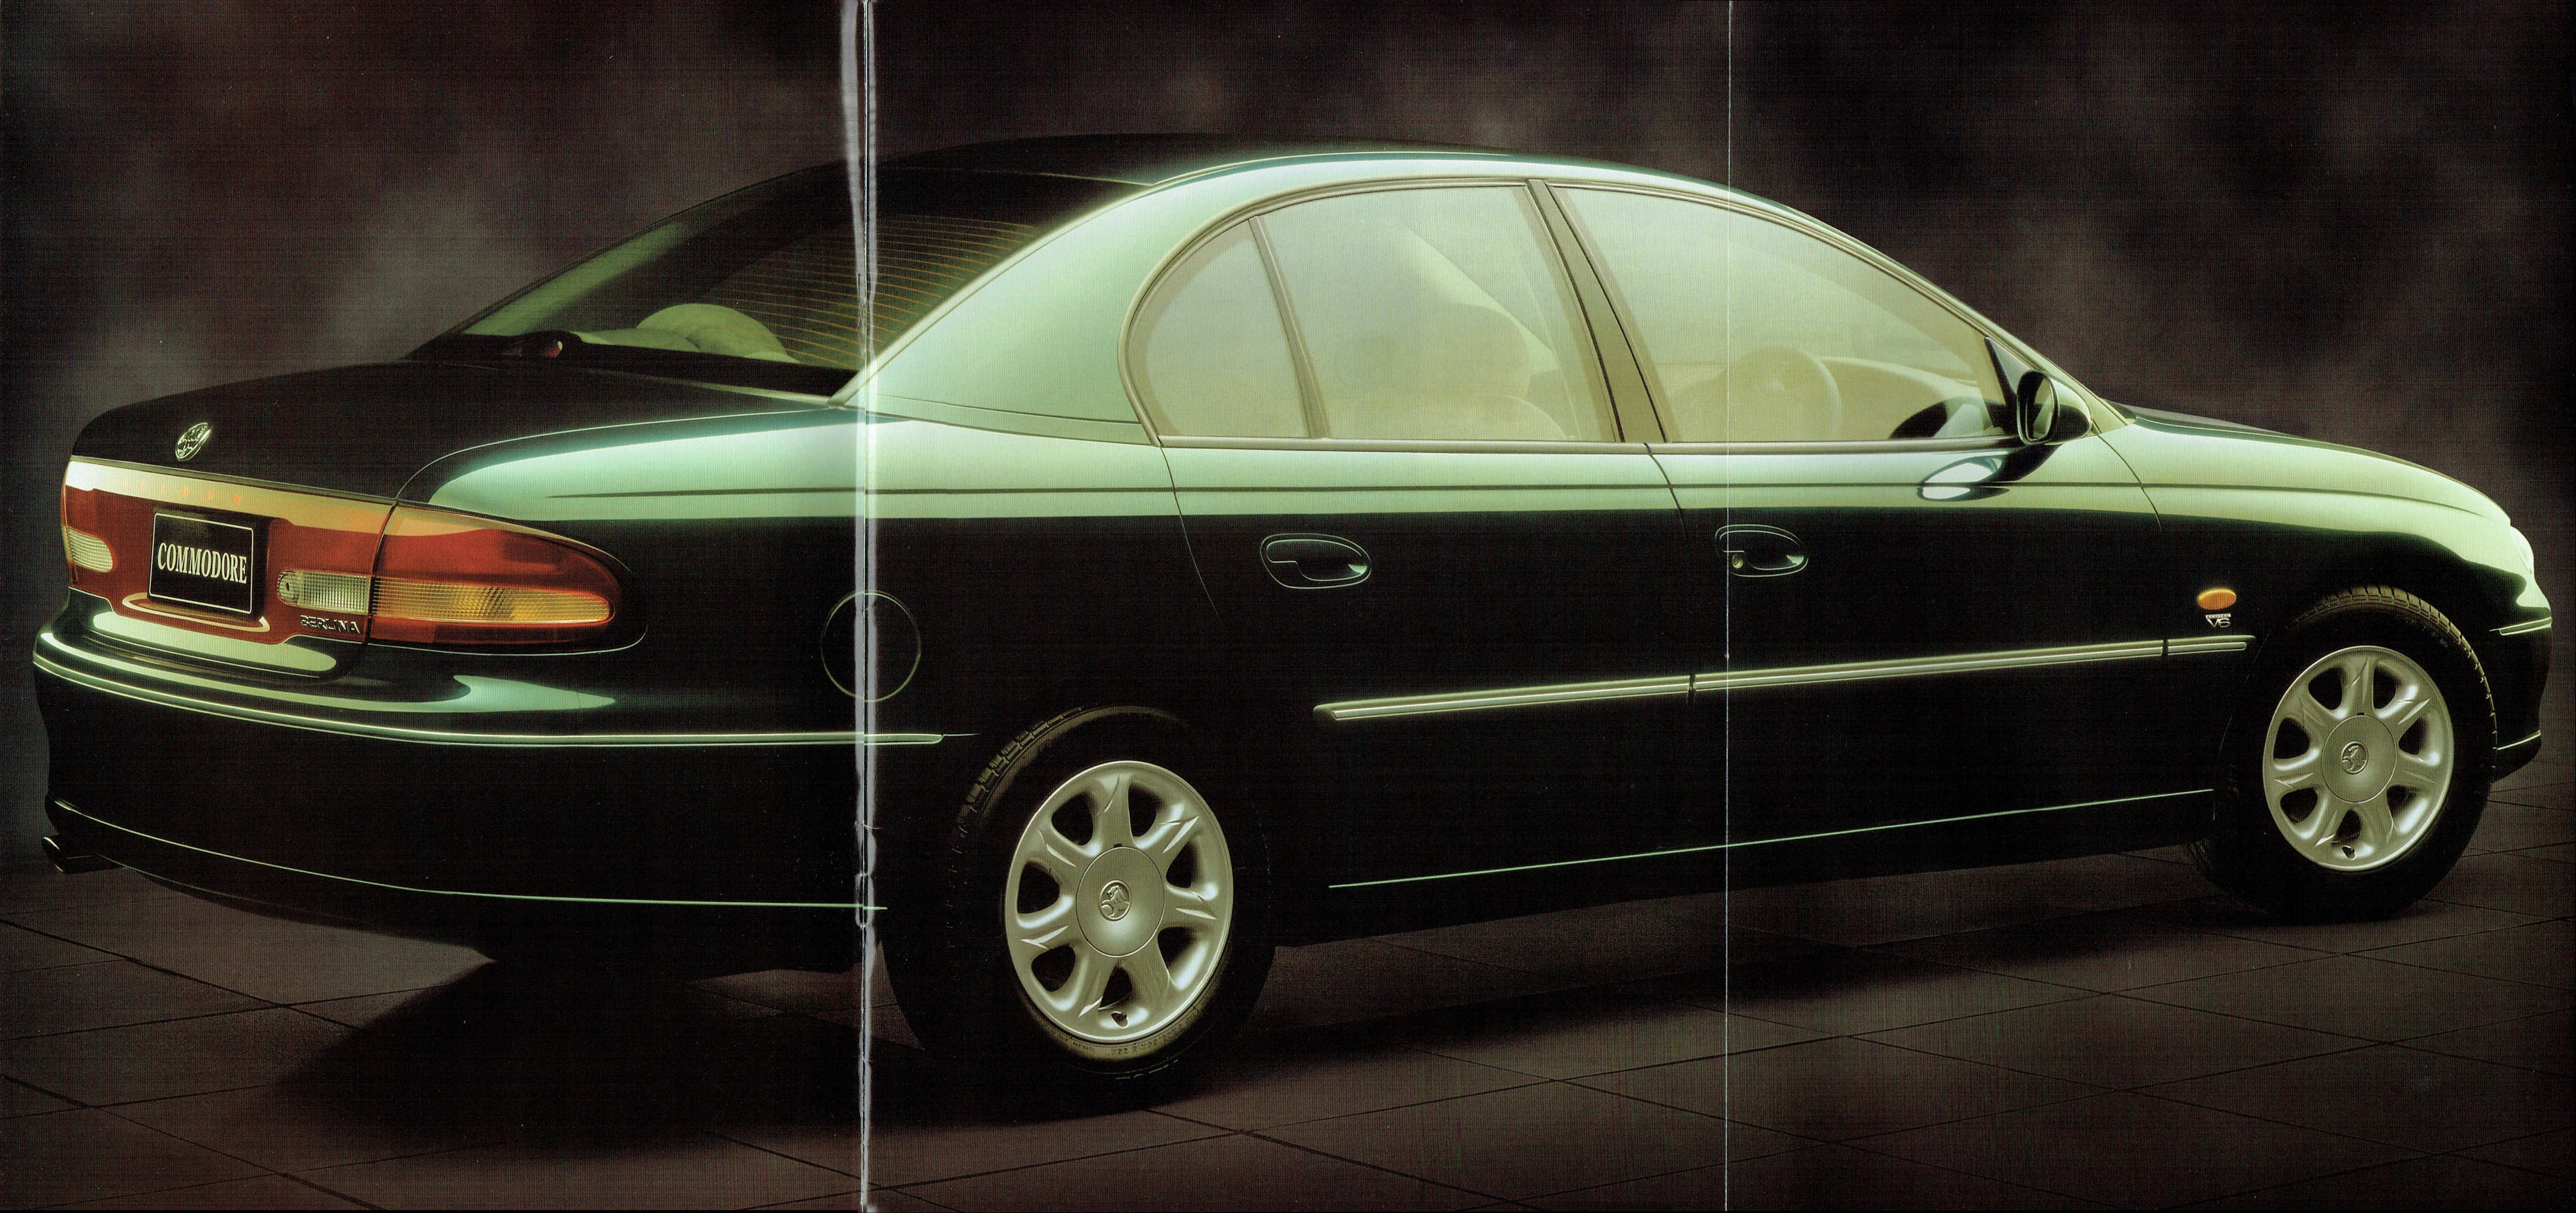 1997 Holden VT Commodore-02-03-04